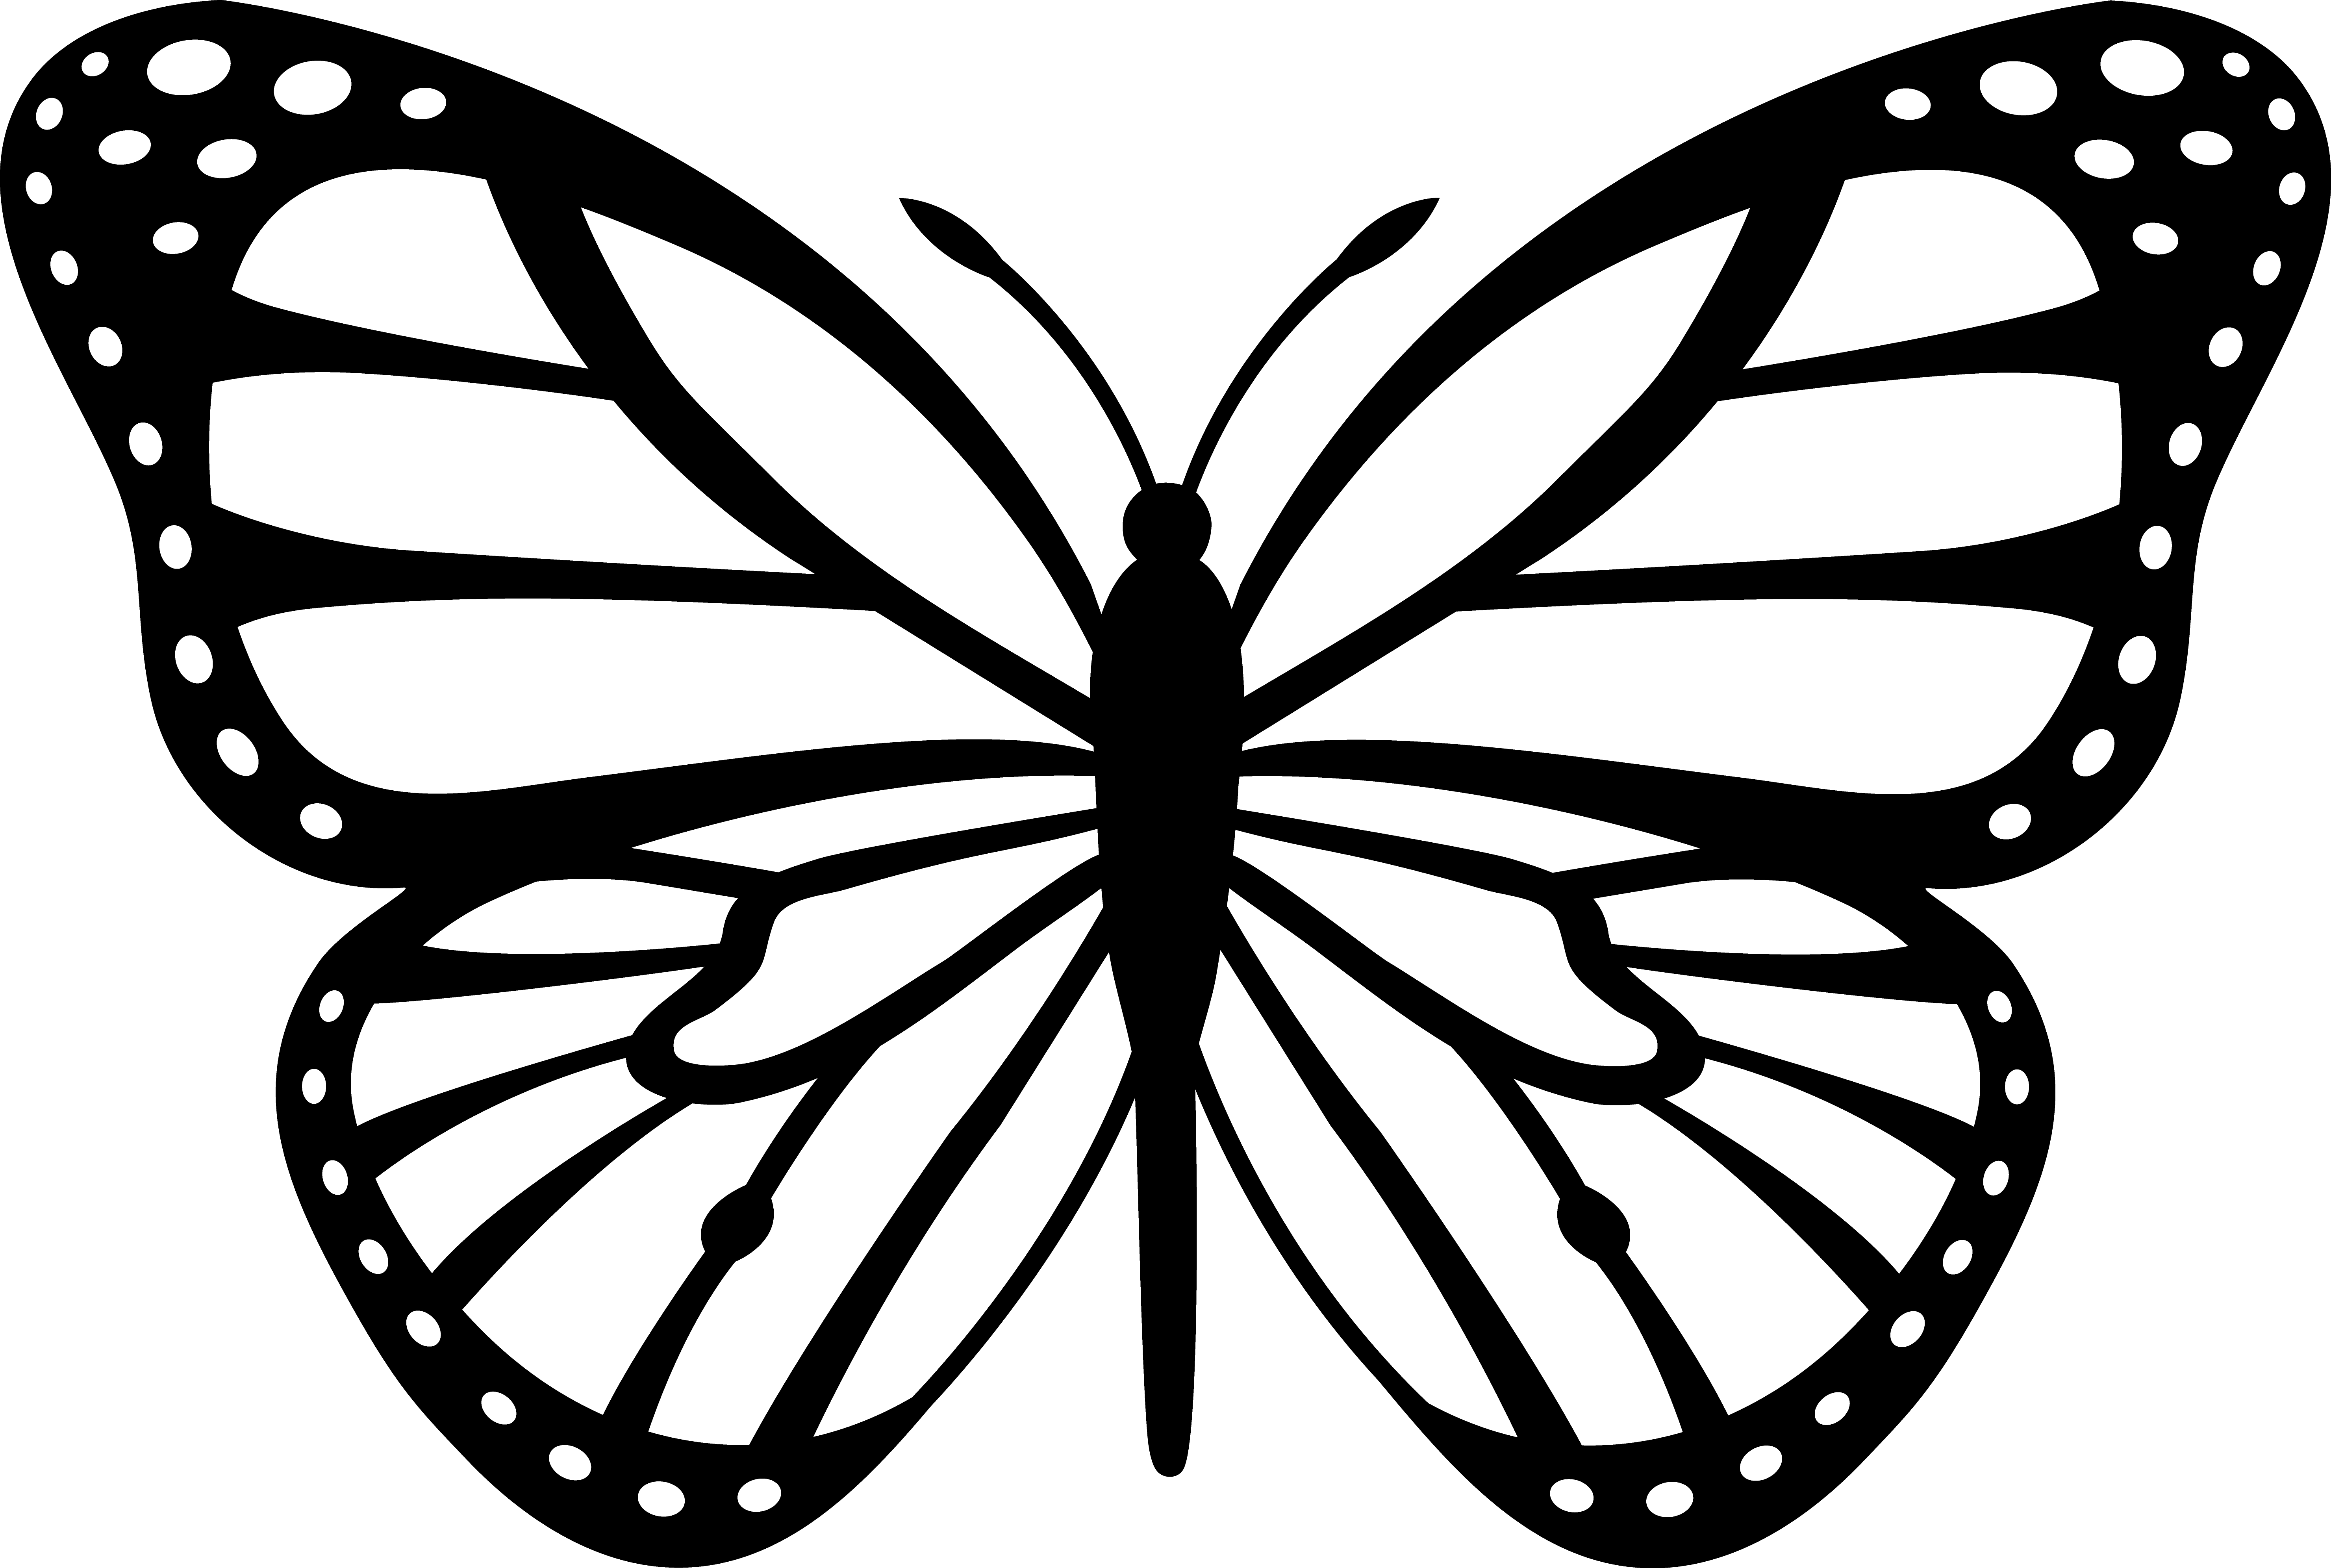 Butterflies clipart free clip